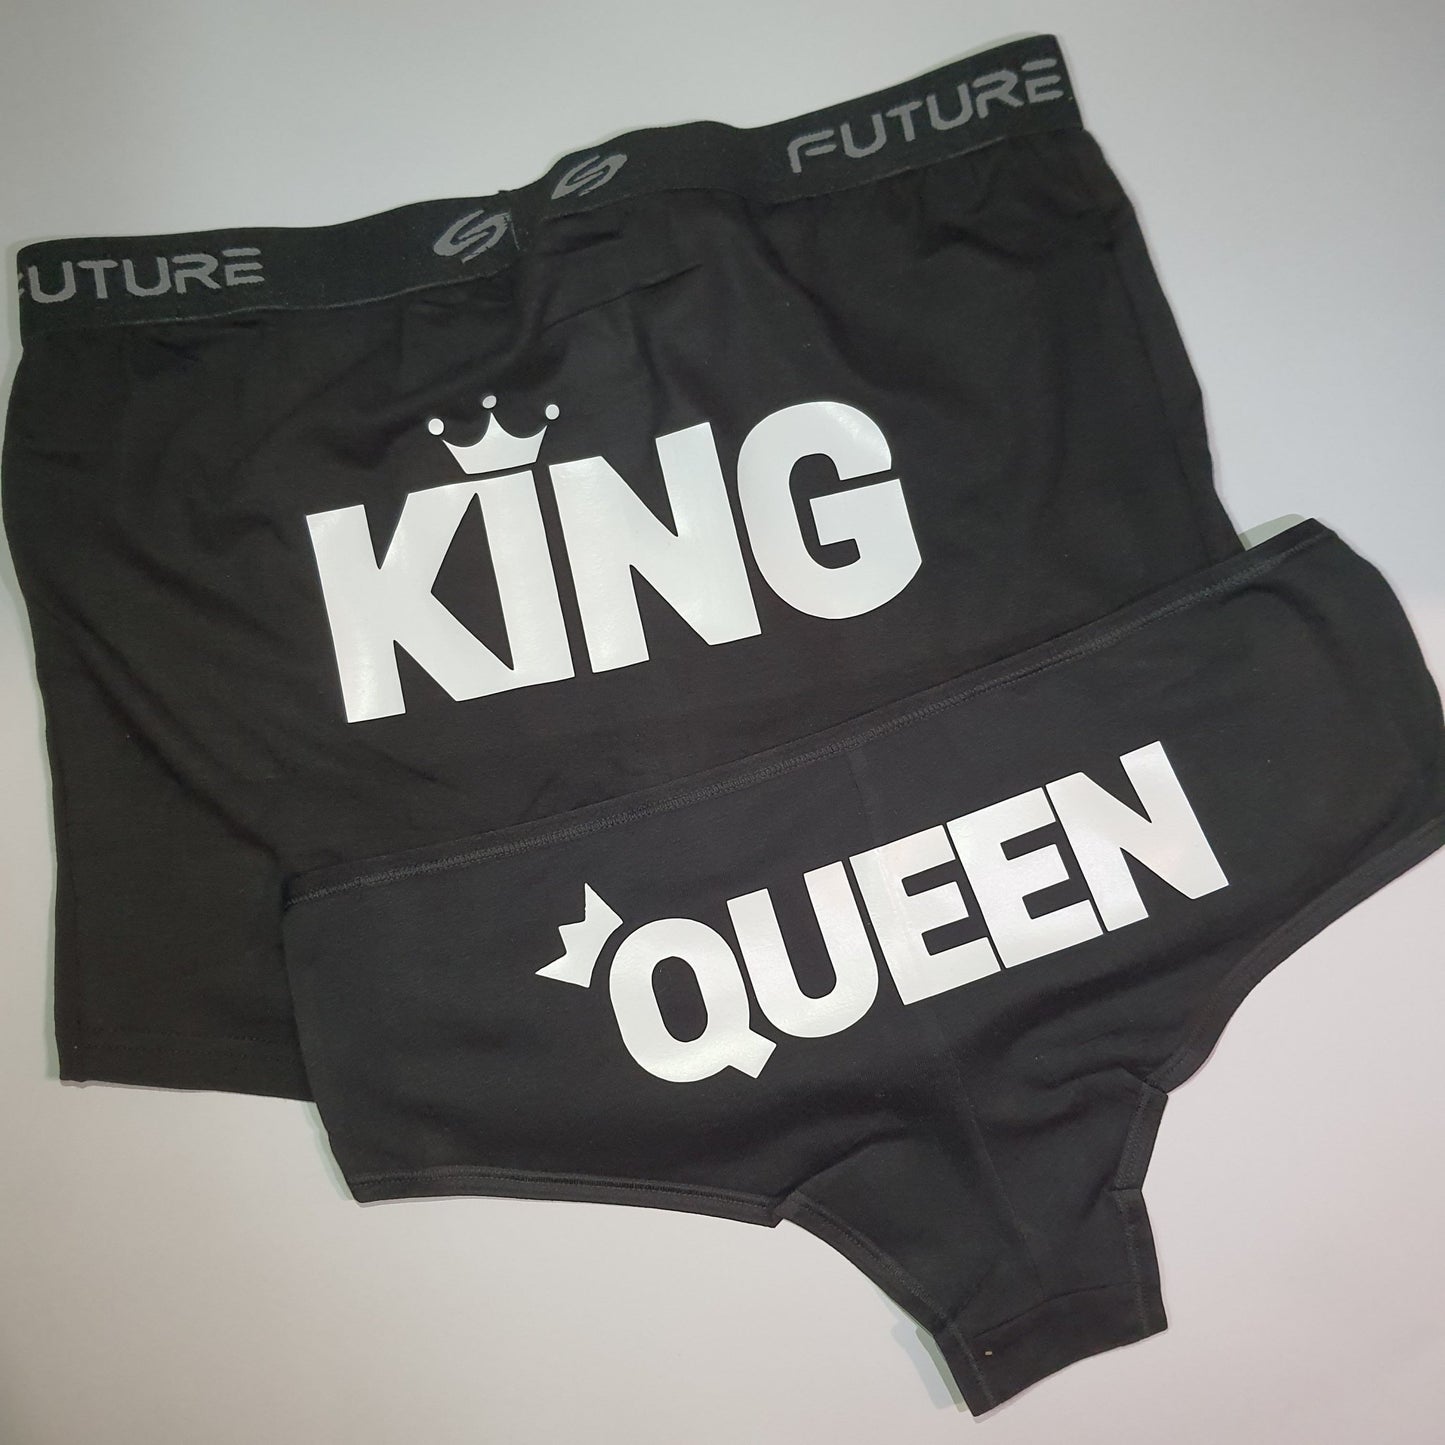 Couple underwear - King/Queen - Etba3lly